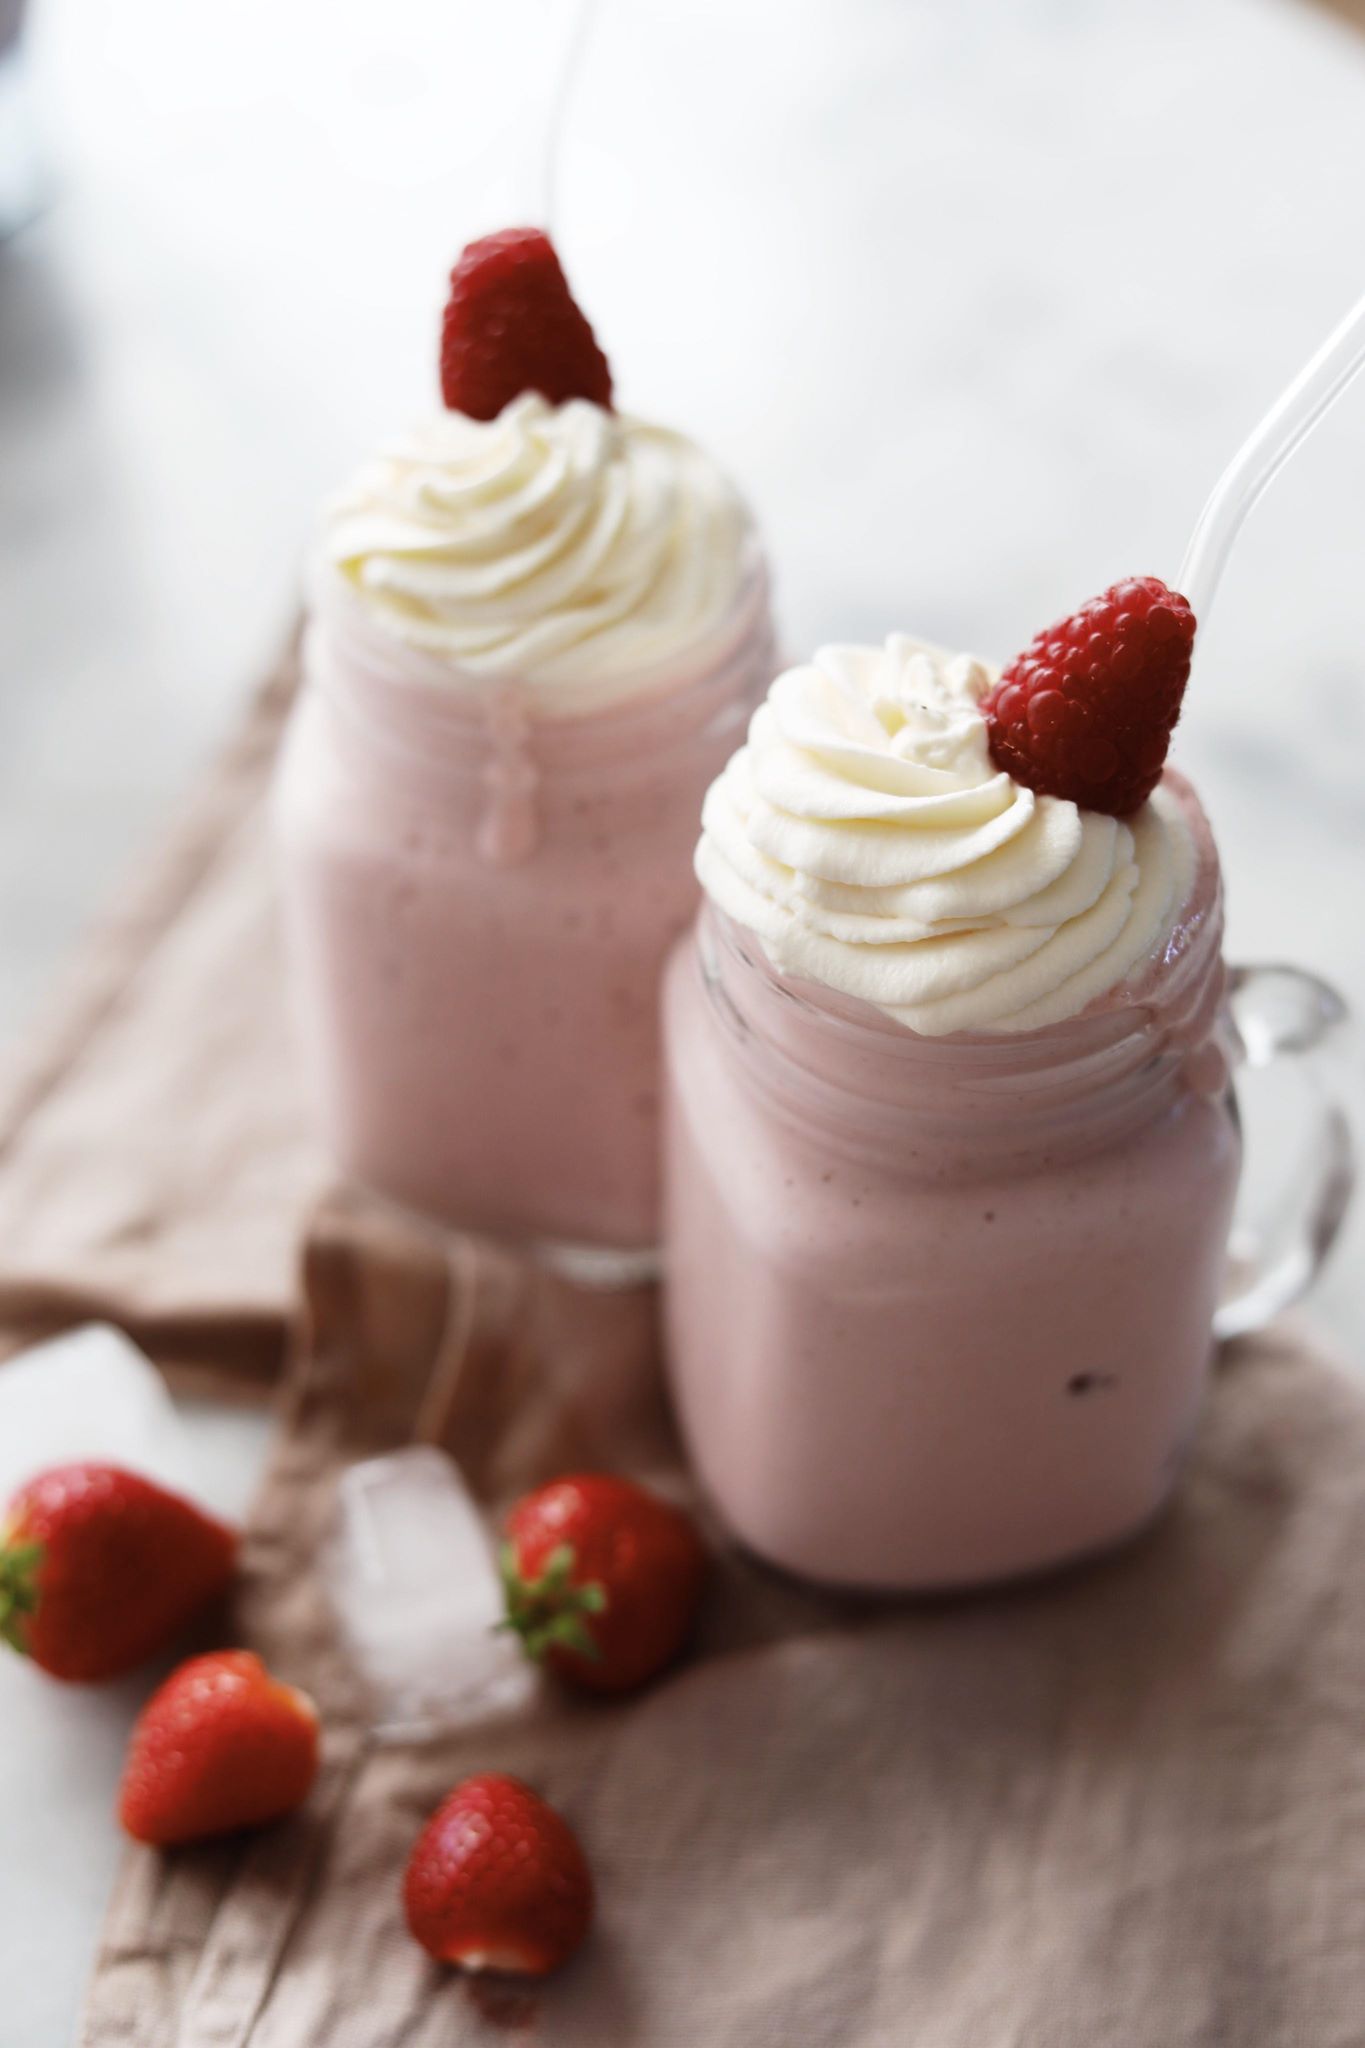 Fredagshygge- Milkshake med jordbær og hindbær